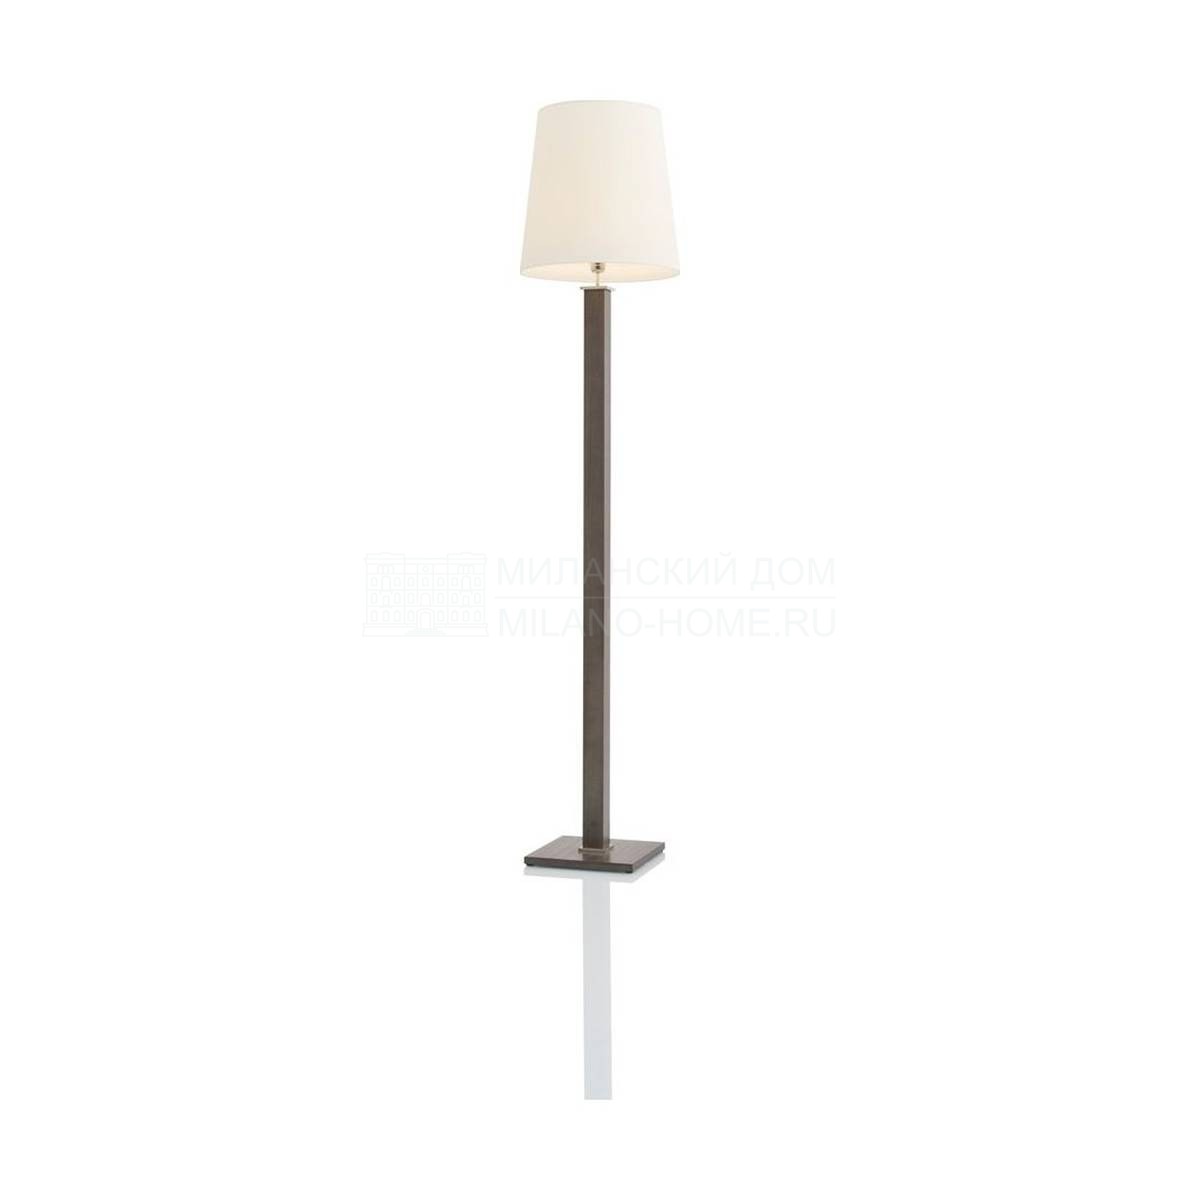 Торшер Nash/floor-lamp из Бельгии фабрики JNL 